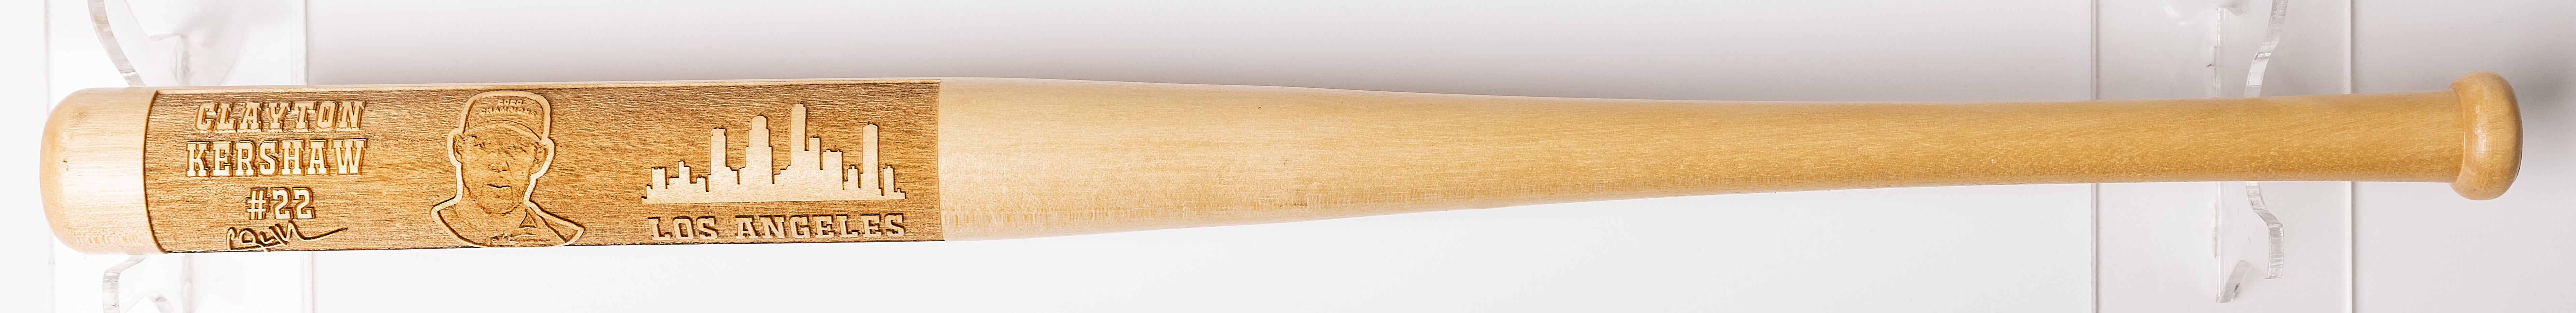 Clayton Kershaw Laser-Engraved Wood Baseball Bat